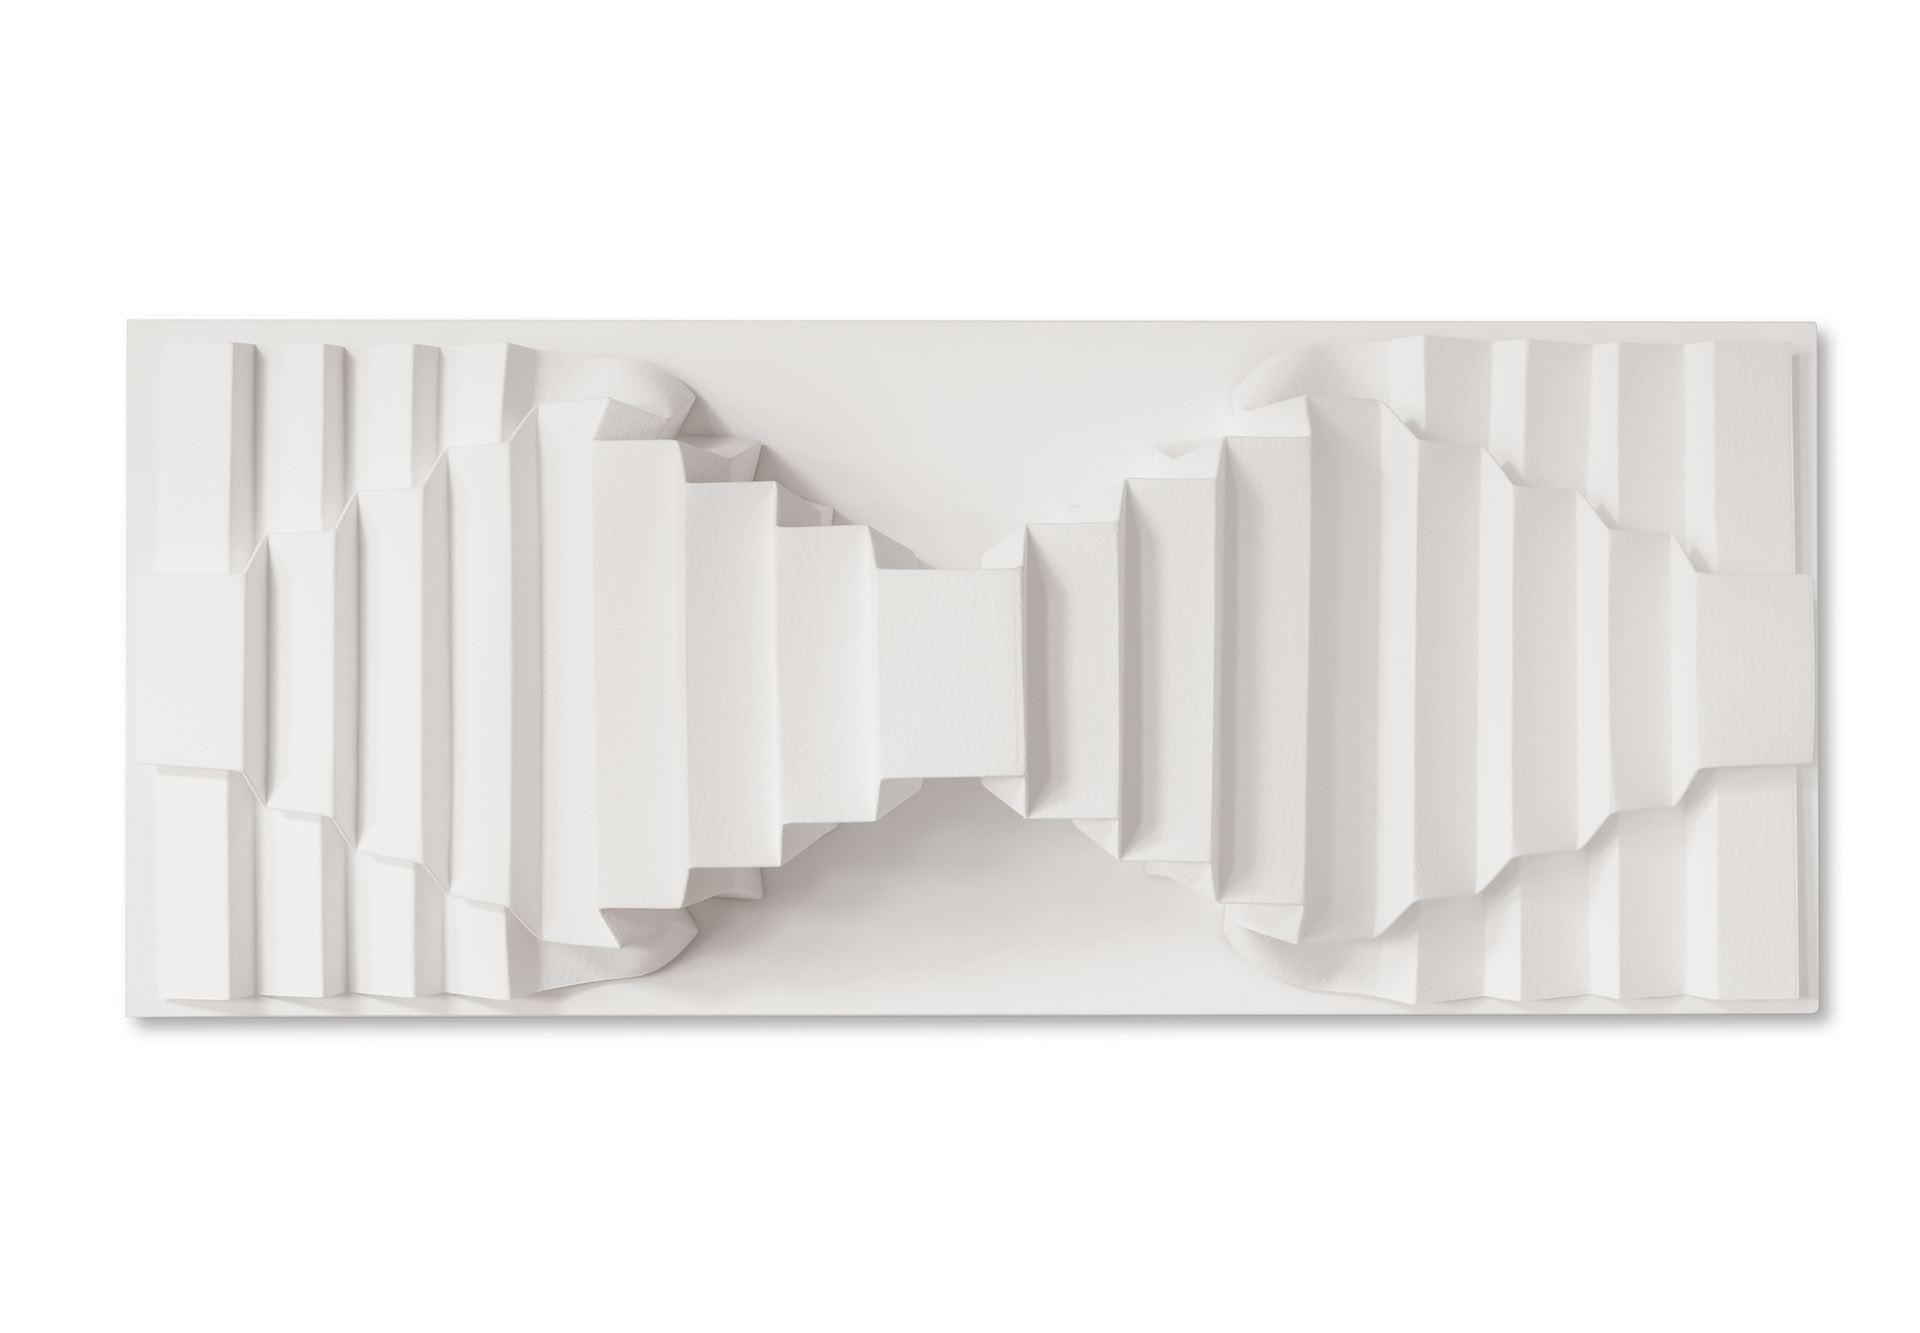 "2 x Variation der Durchdringung A" – 2020, Fabriano Bütten gefaltet, Acrylglashaube, 45 x 108 x 22,5 cm